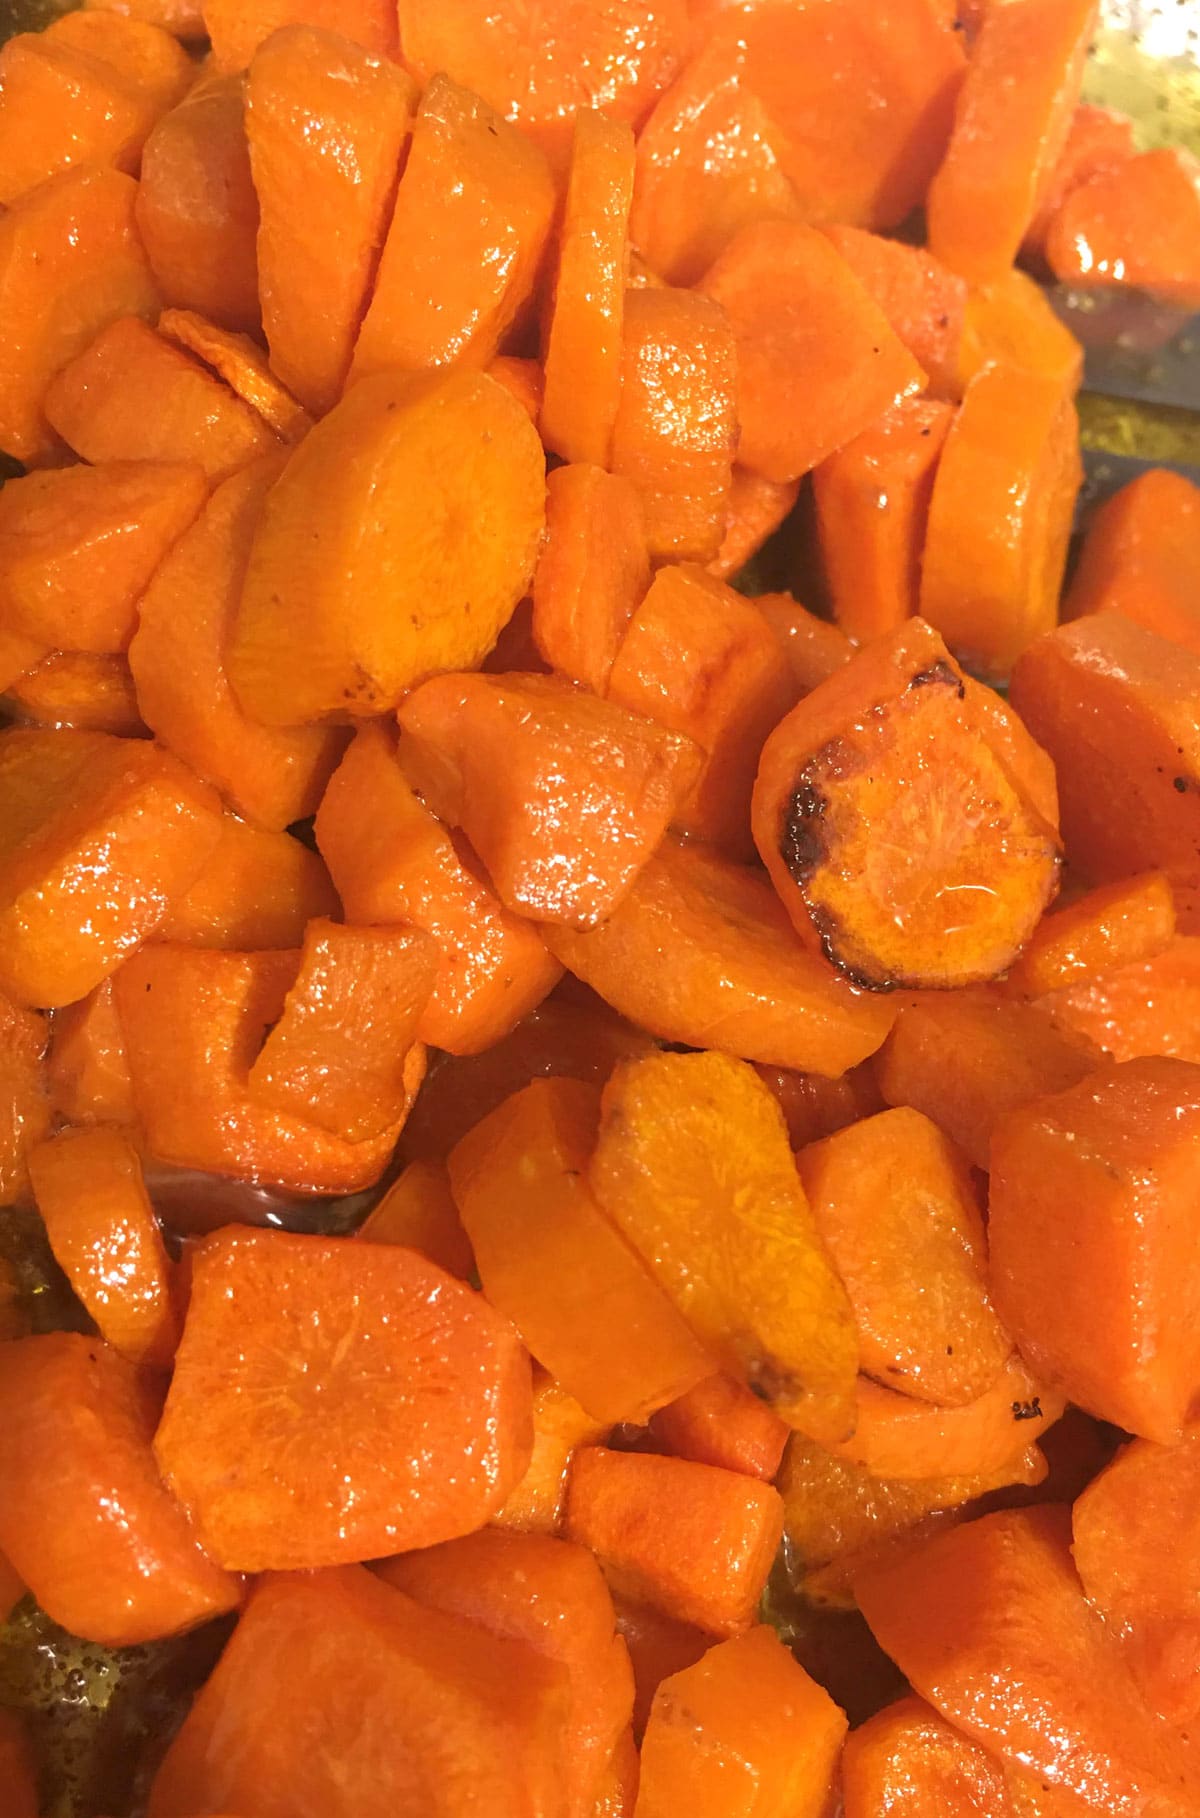 sauteed carrots recipe easy